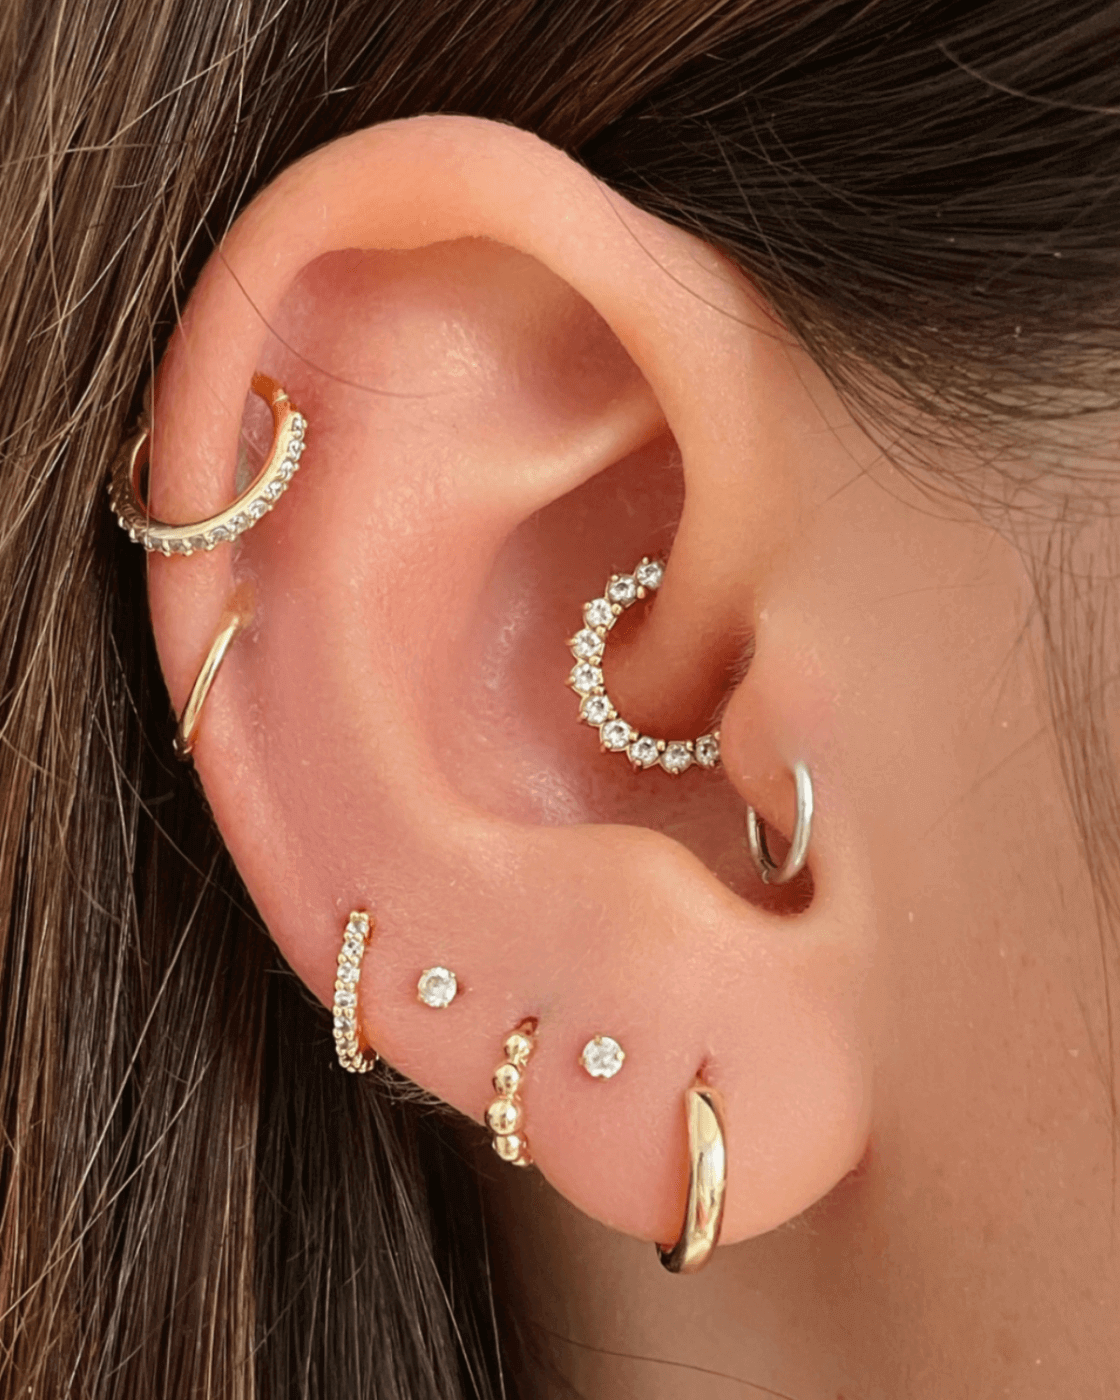 Ear Piercing Ideas